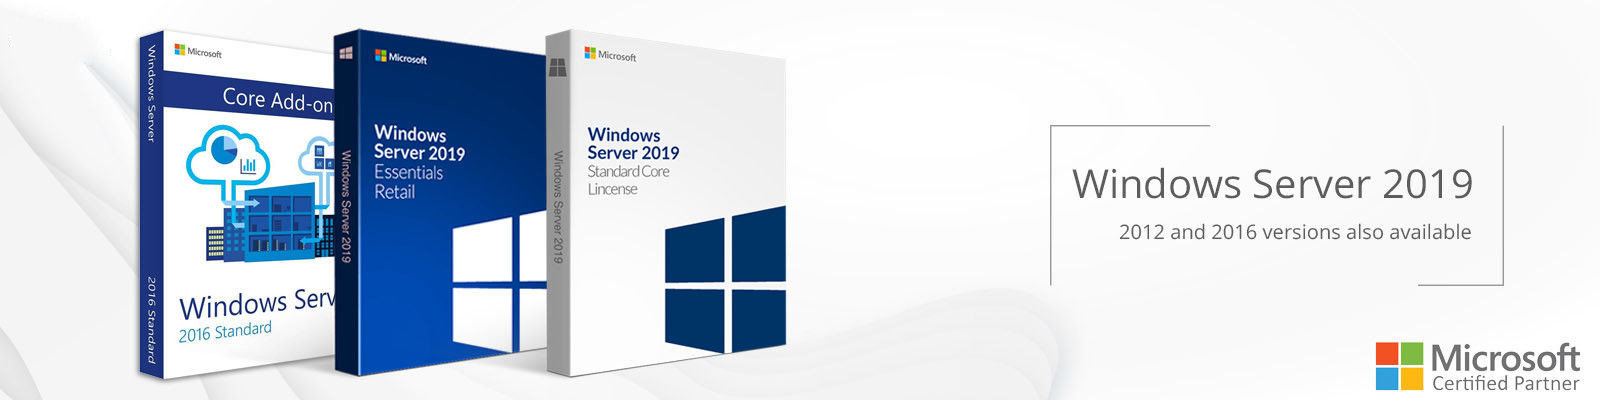 Porcellana il la cosa migliore chiave della licenza di Microsoft Windows 10 sulle vendite